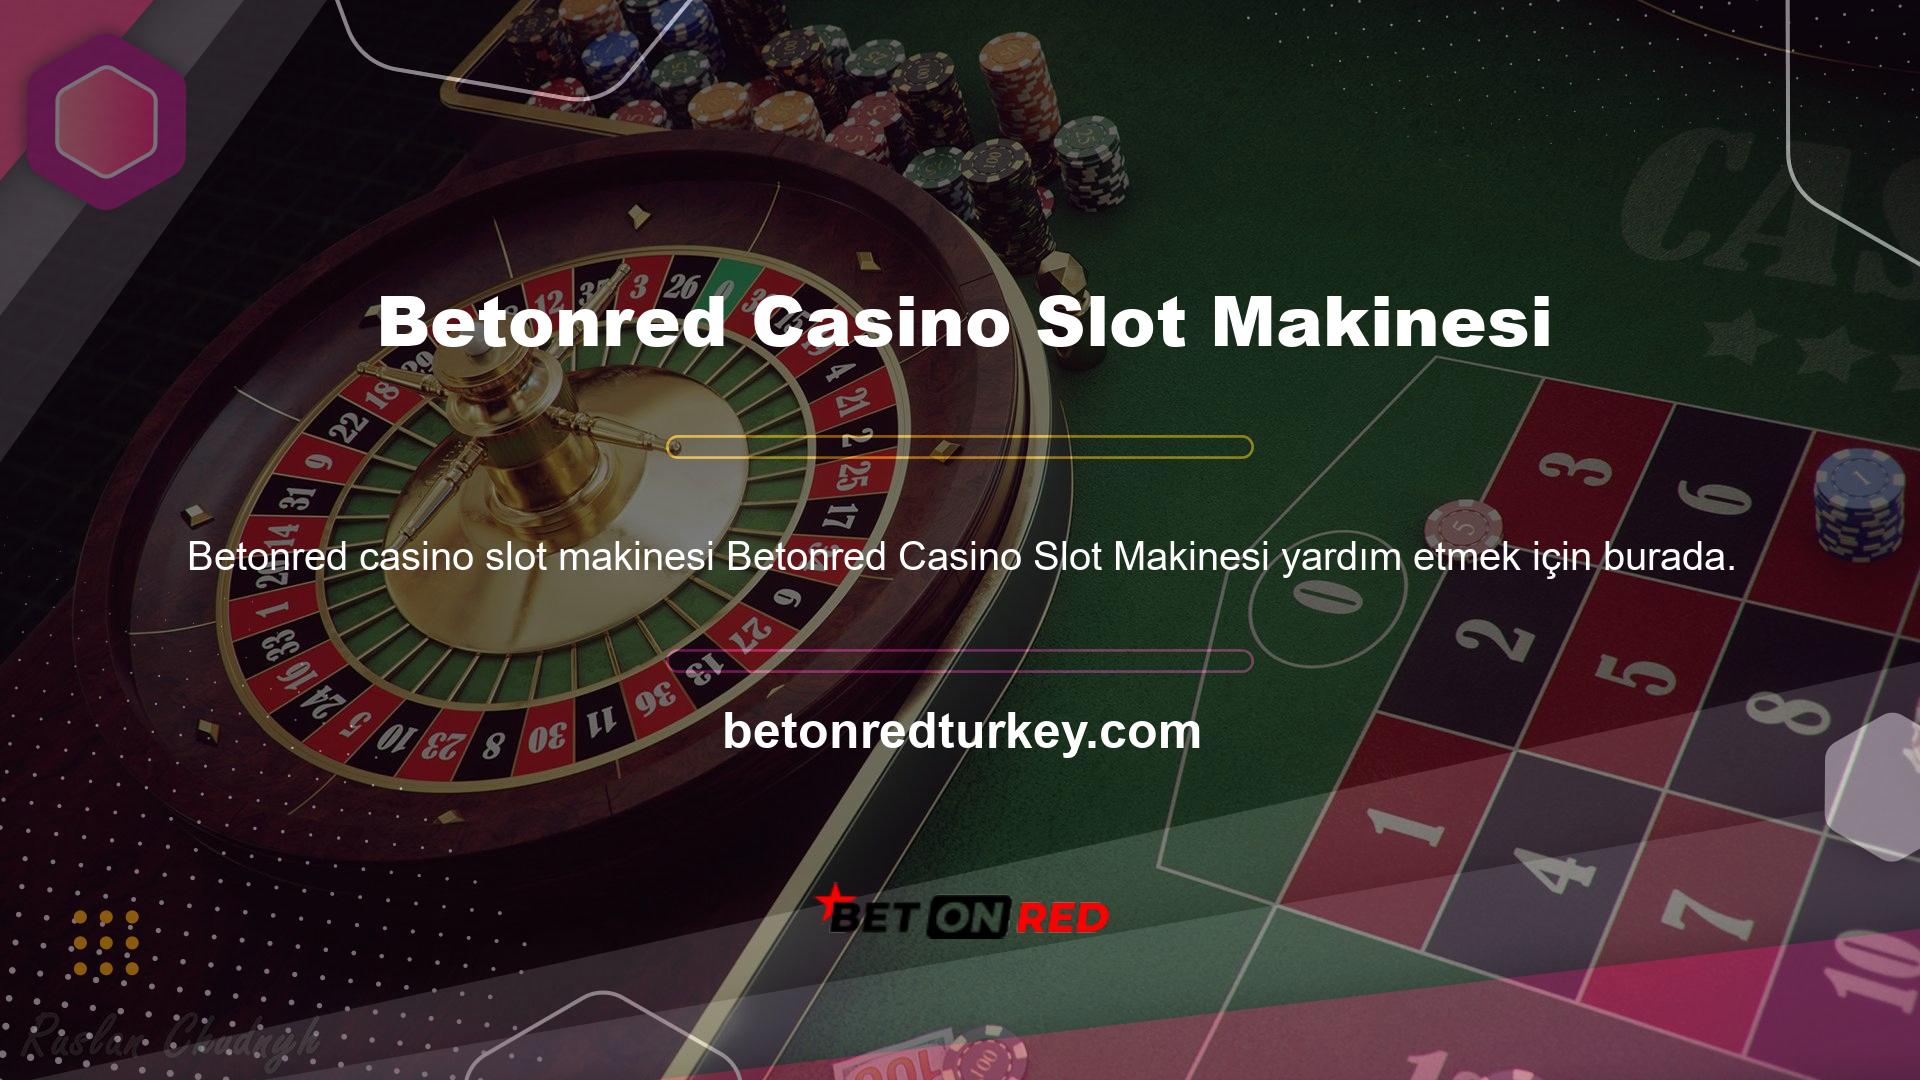 Casino sitelerinin kullanıcıları bonus faaliyetlerine yüksek değer vermektedir